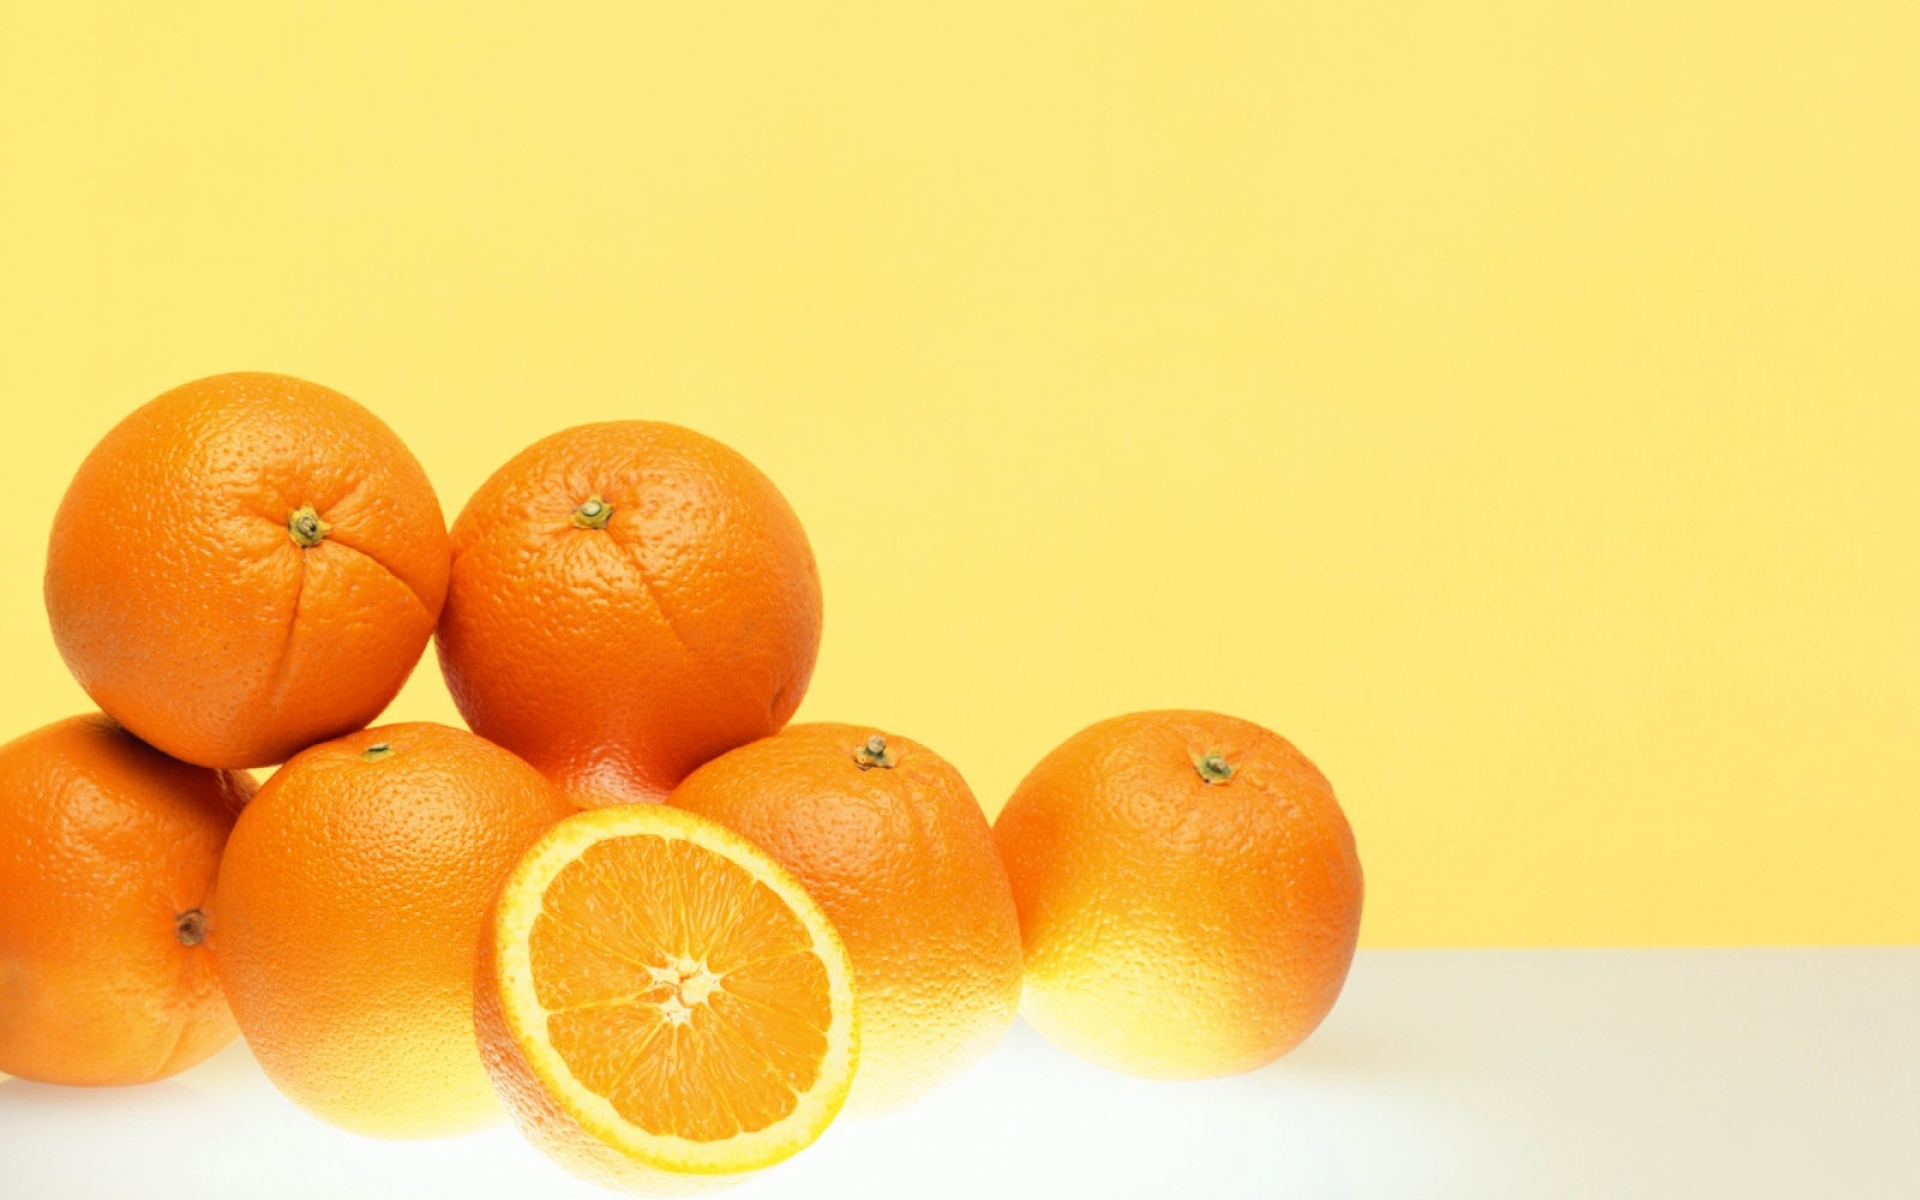 Картинки Апельсины, спелые, фруктовые, наполовину фото и обои на рабочий стол